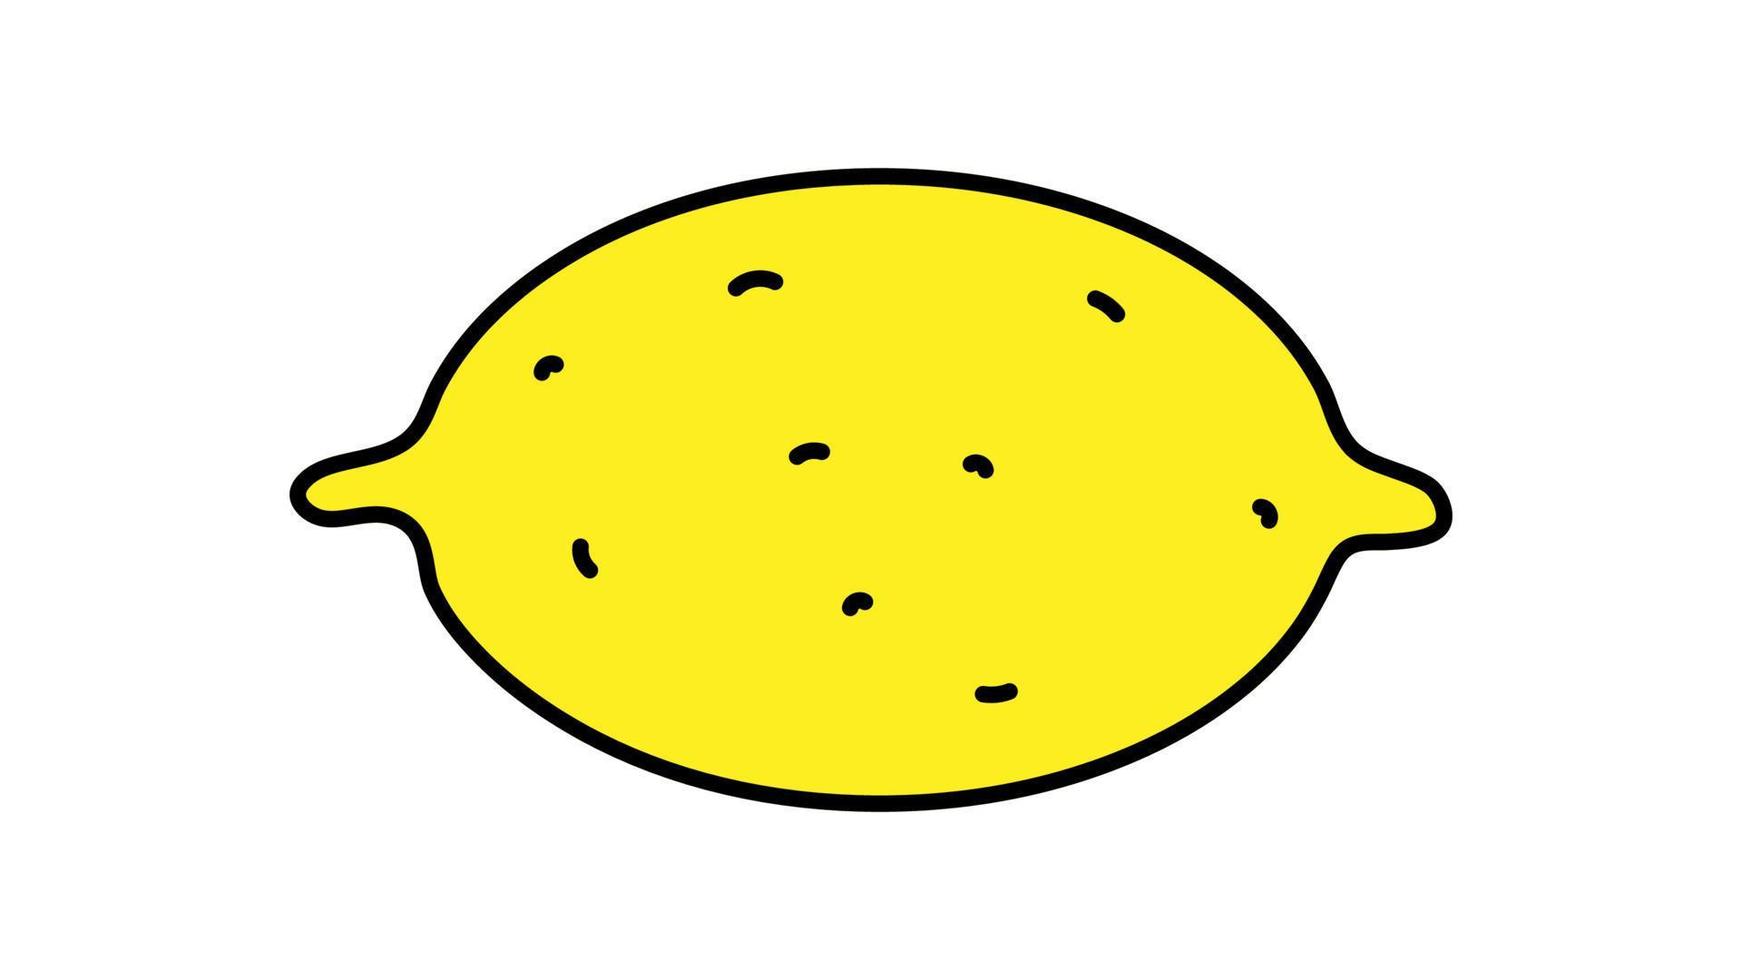 limão brilhante, amarelo e apetitoso em um fundo branco, ilustração vetorial. uma fruta com uma casca grossa. desenho de limão, comida vitamínica, comida vegana, dieta de alimentos crus vetor